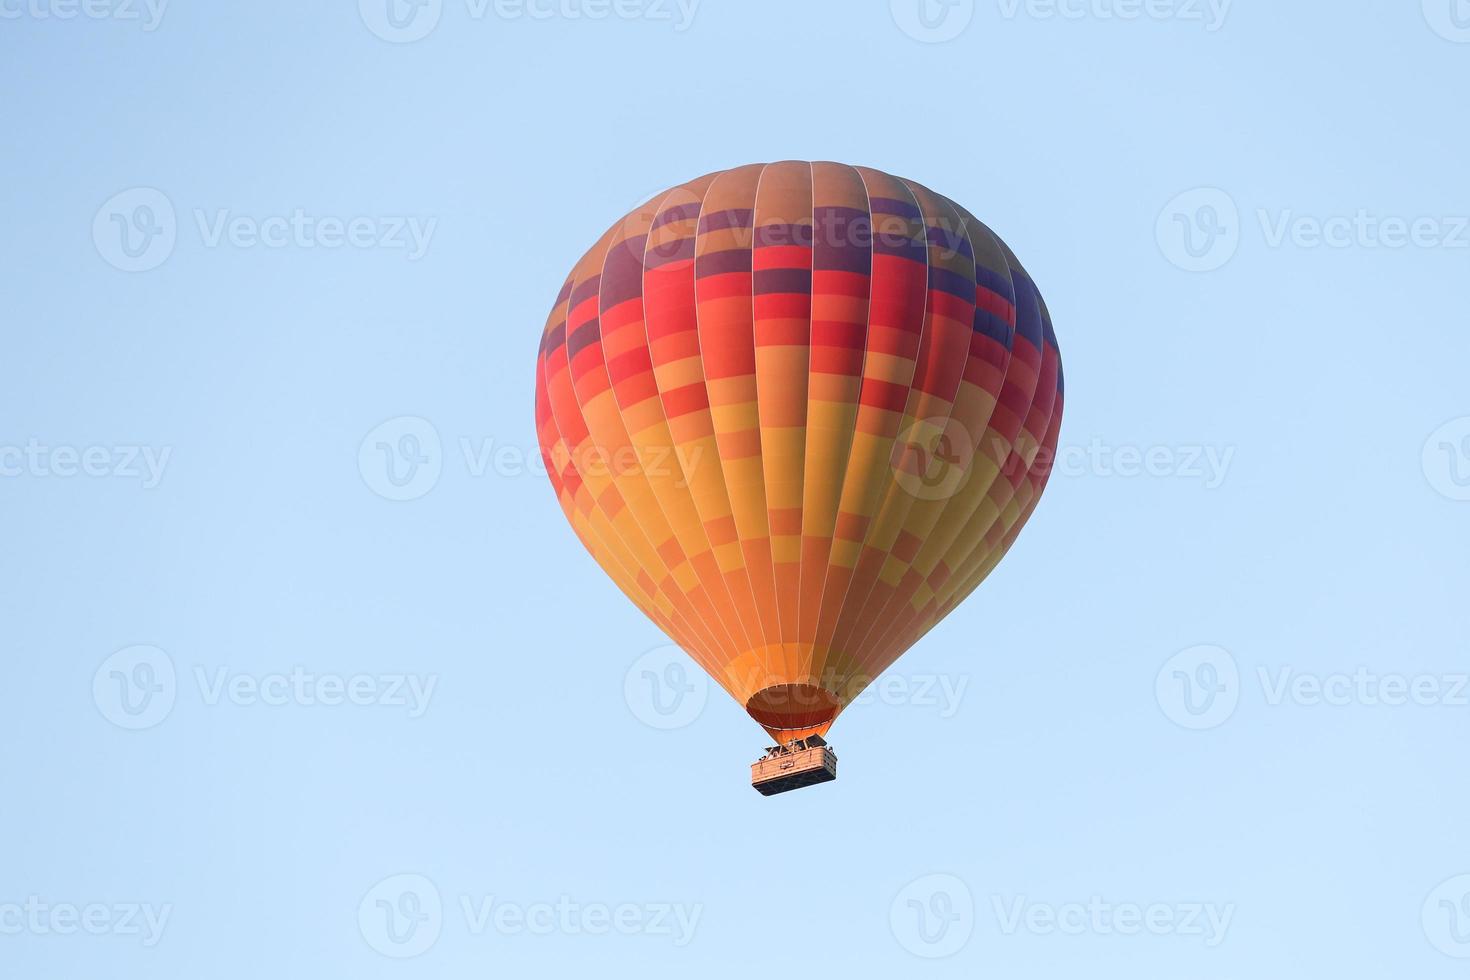 luftballong över Goreme town foto